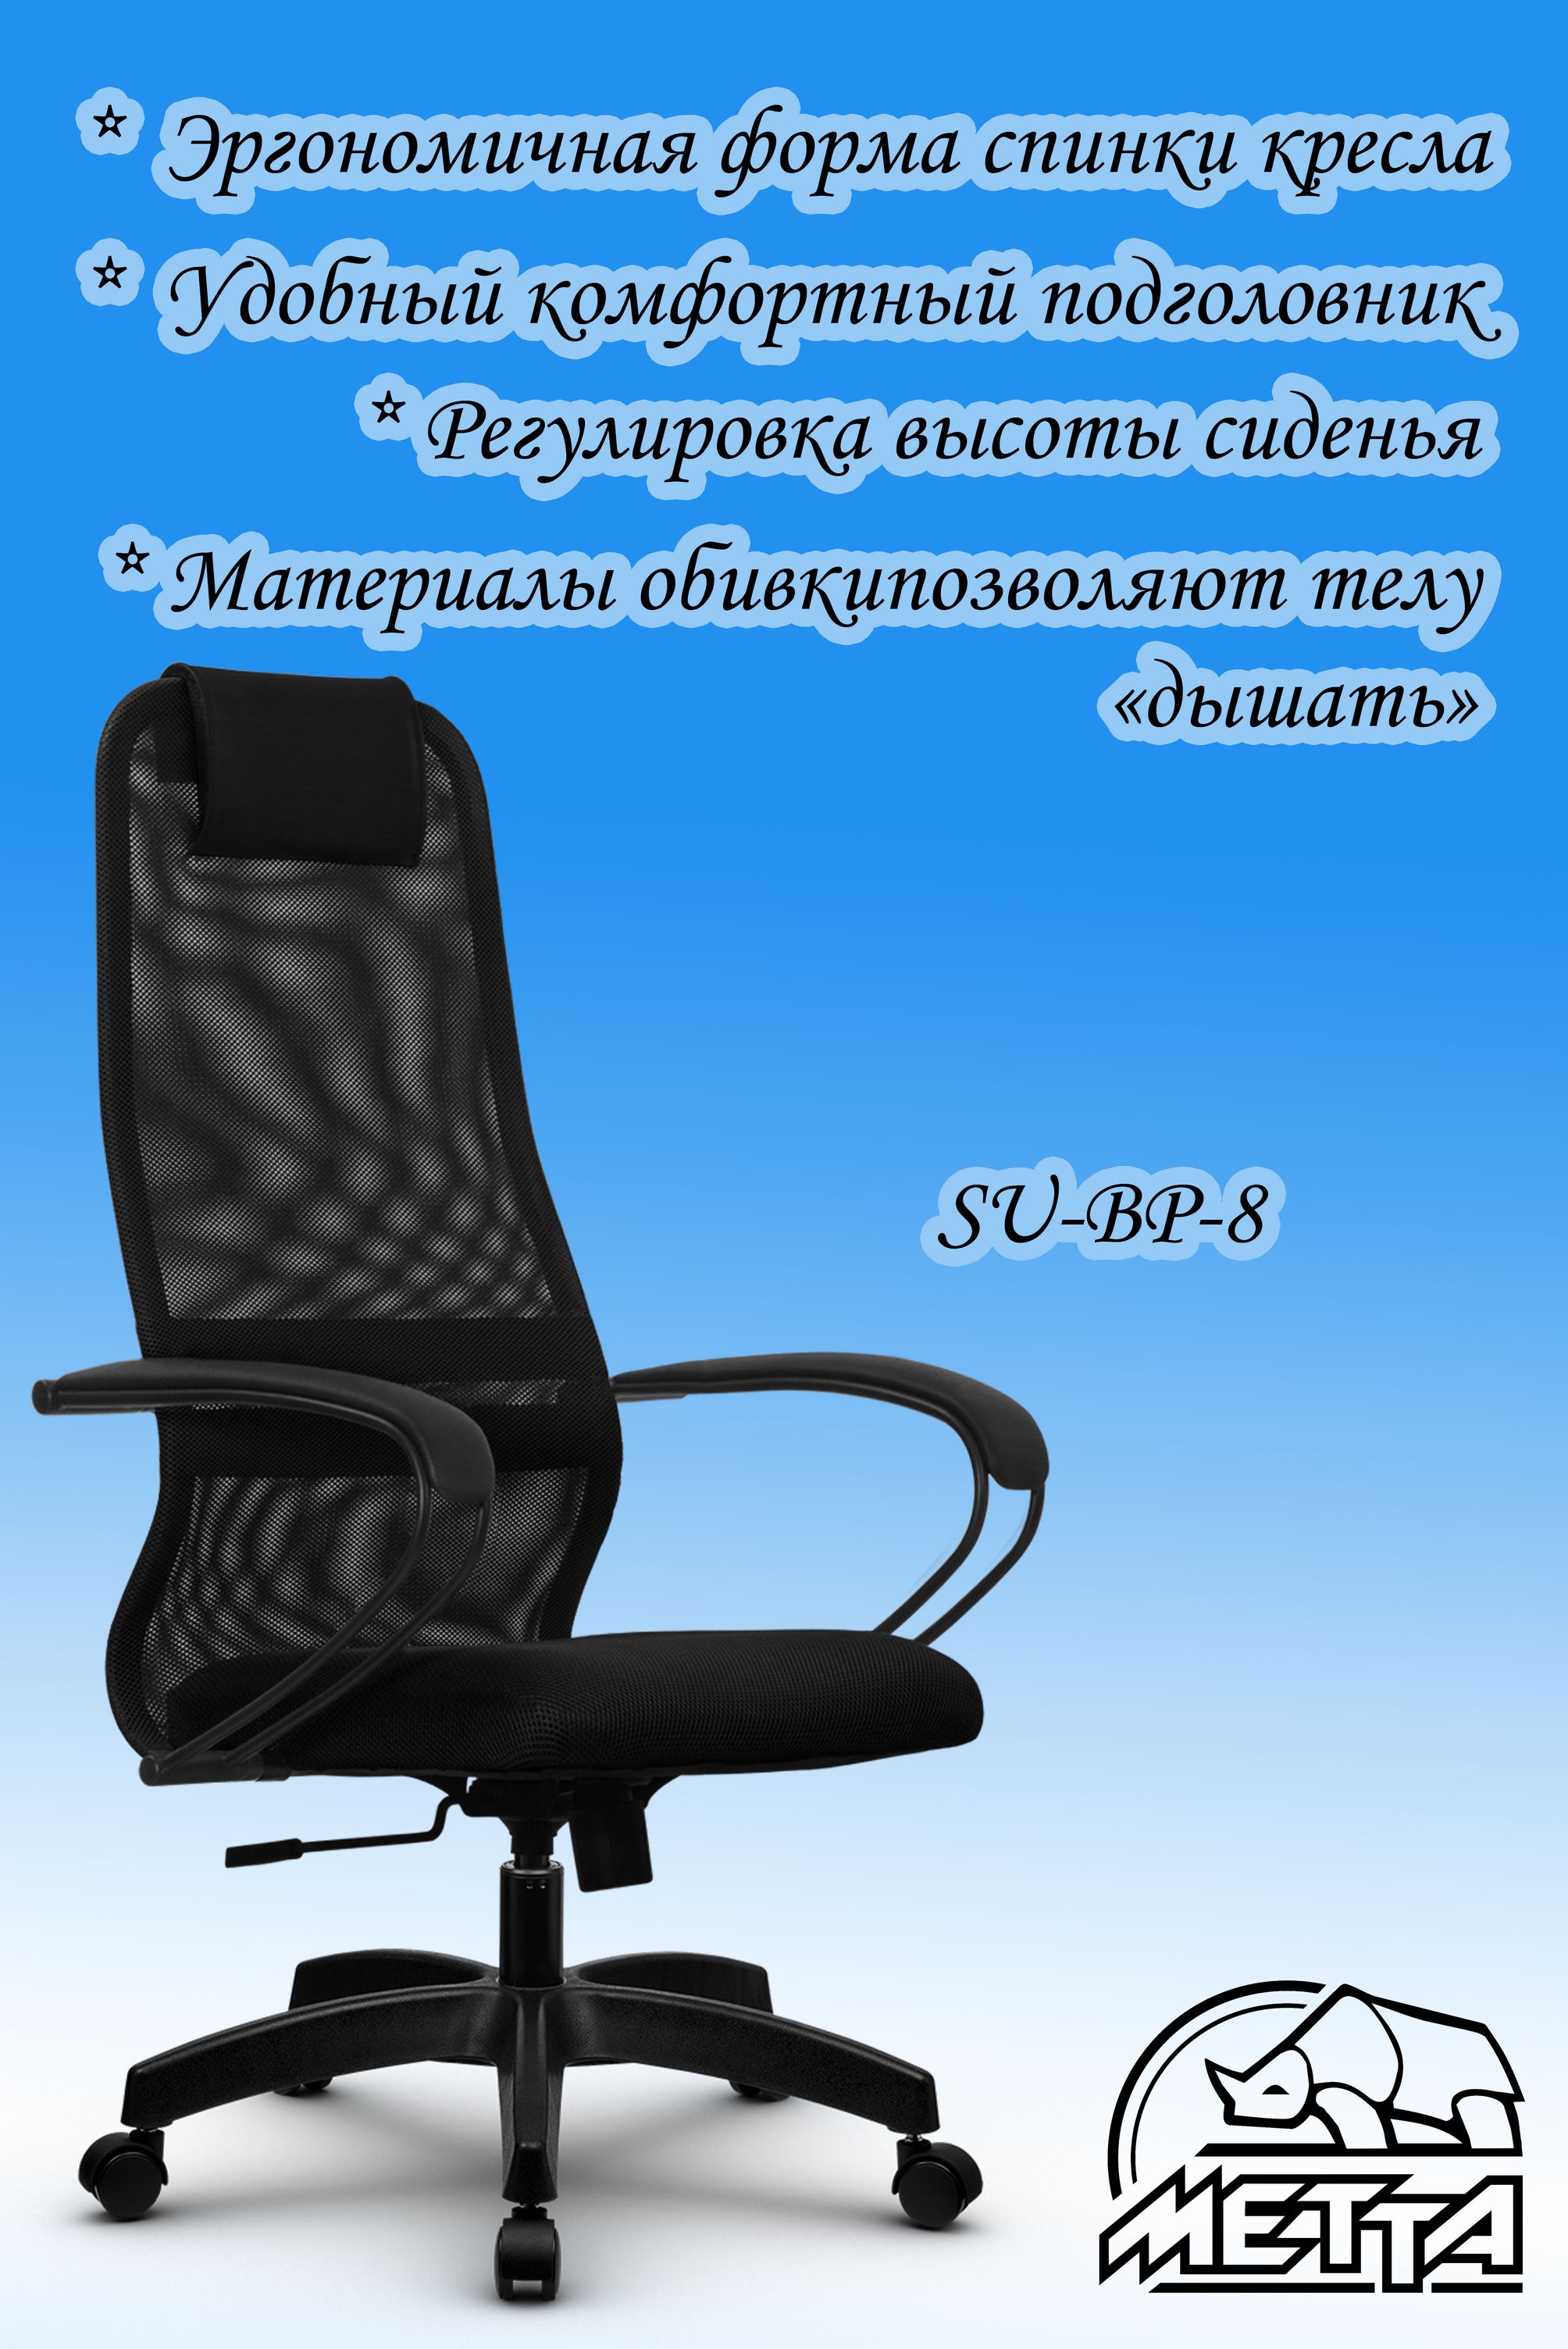 Офисное кресло метта su bp 8